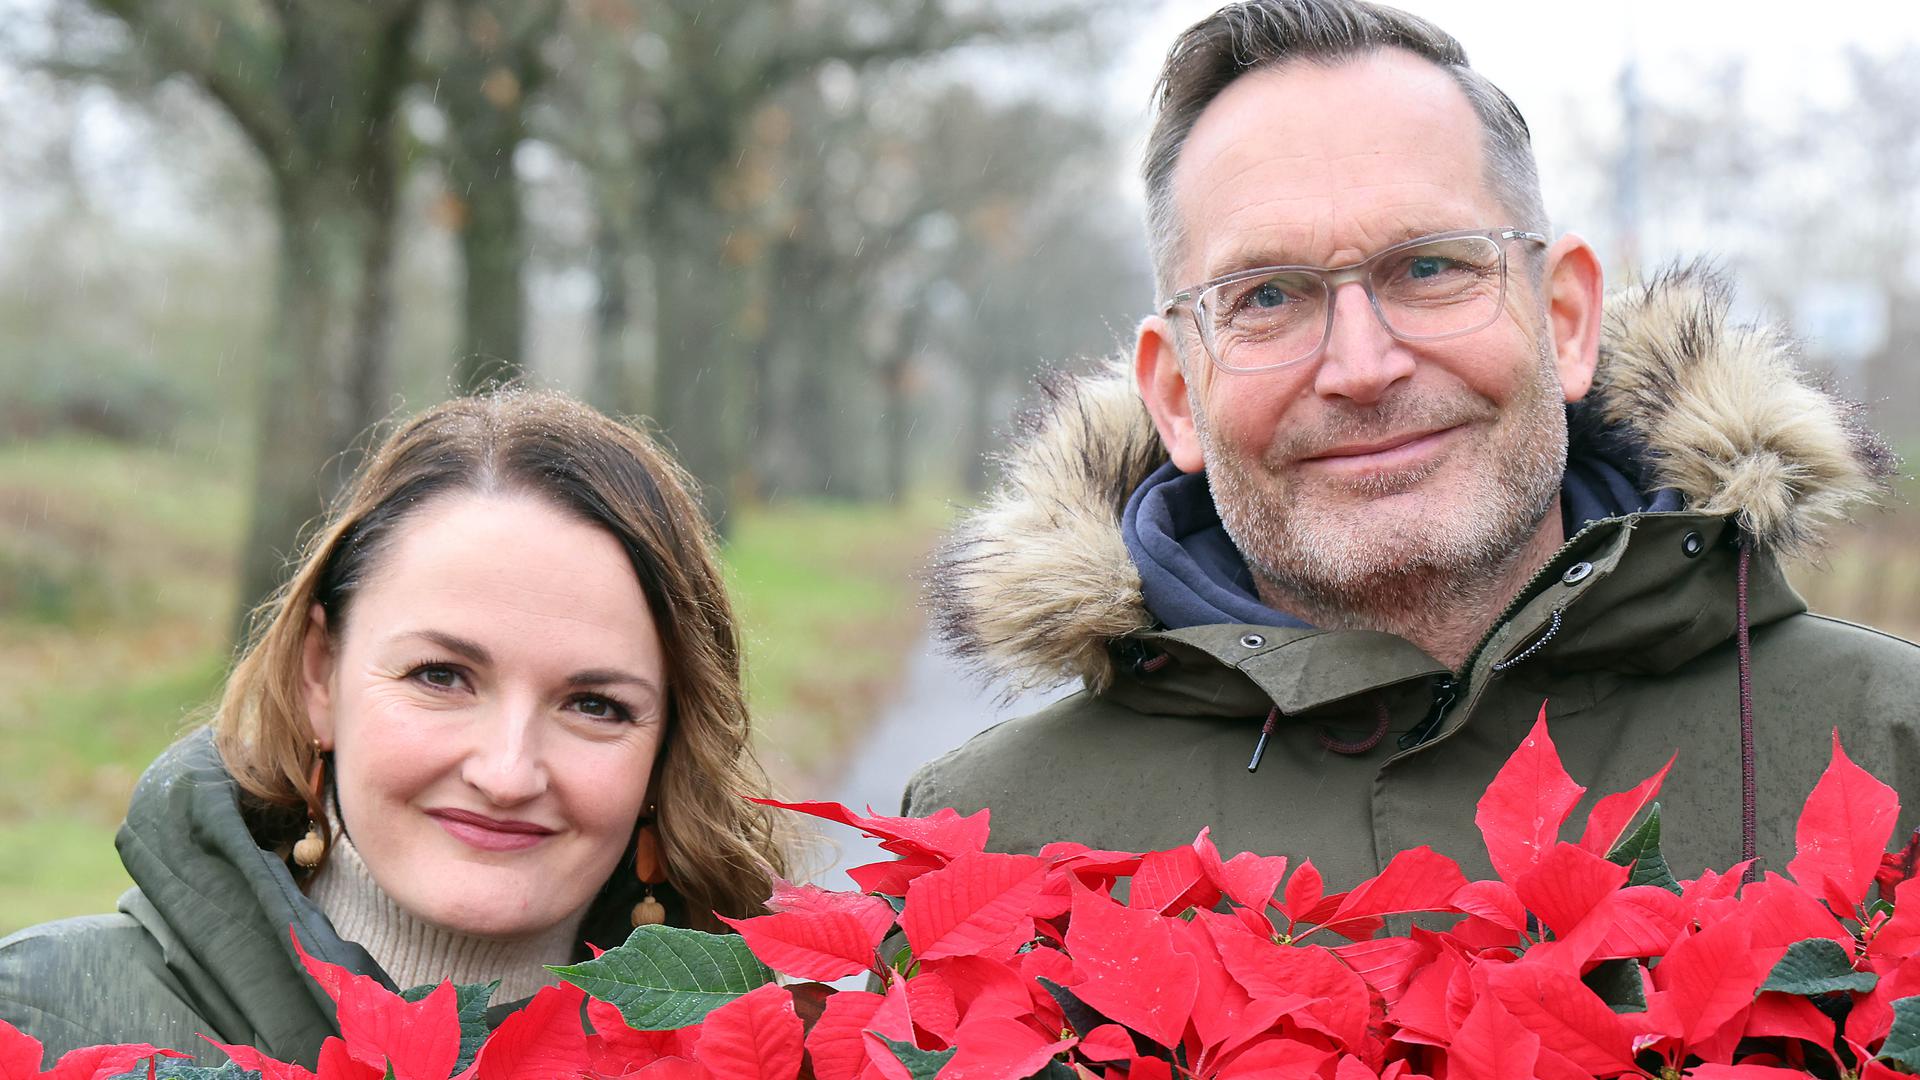 Am 21.12.2022 bereiten Linda Helbling und Jörg Zimmermann erneut ihr gemeinsames Projekt „Weihnachten nicht alleine" vor.